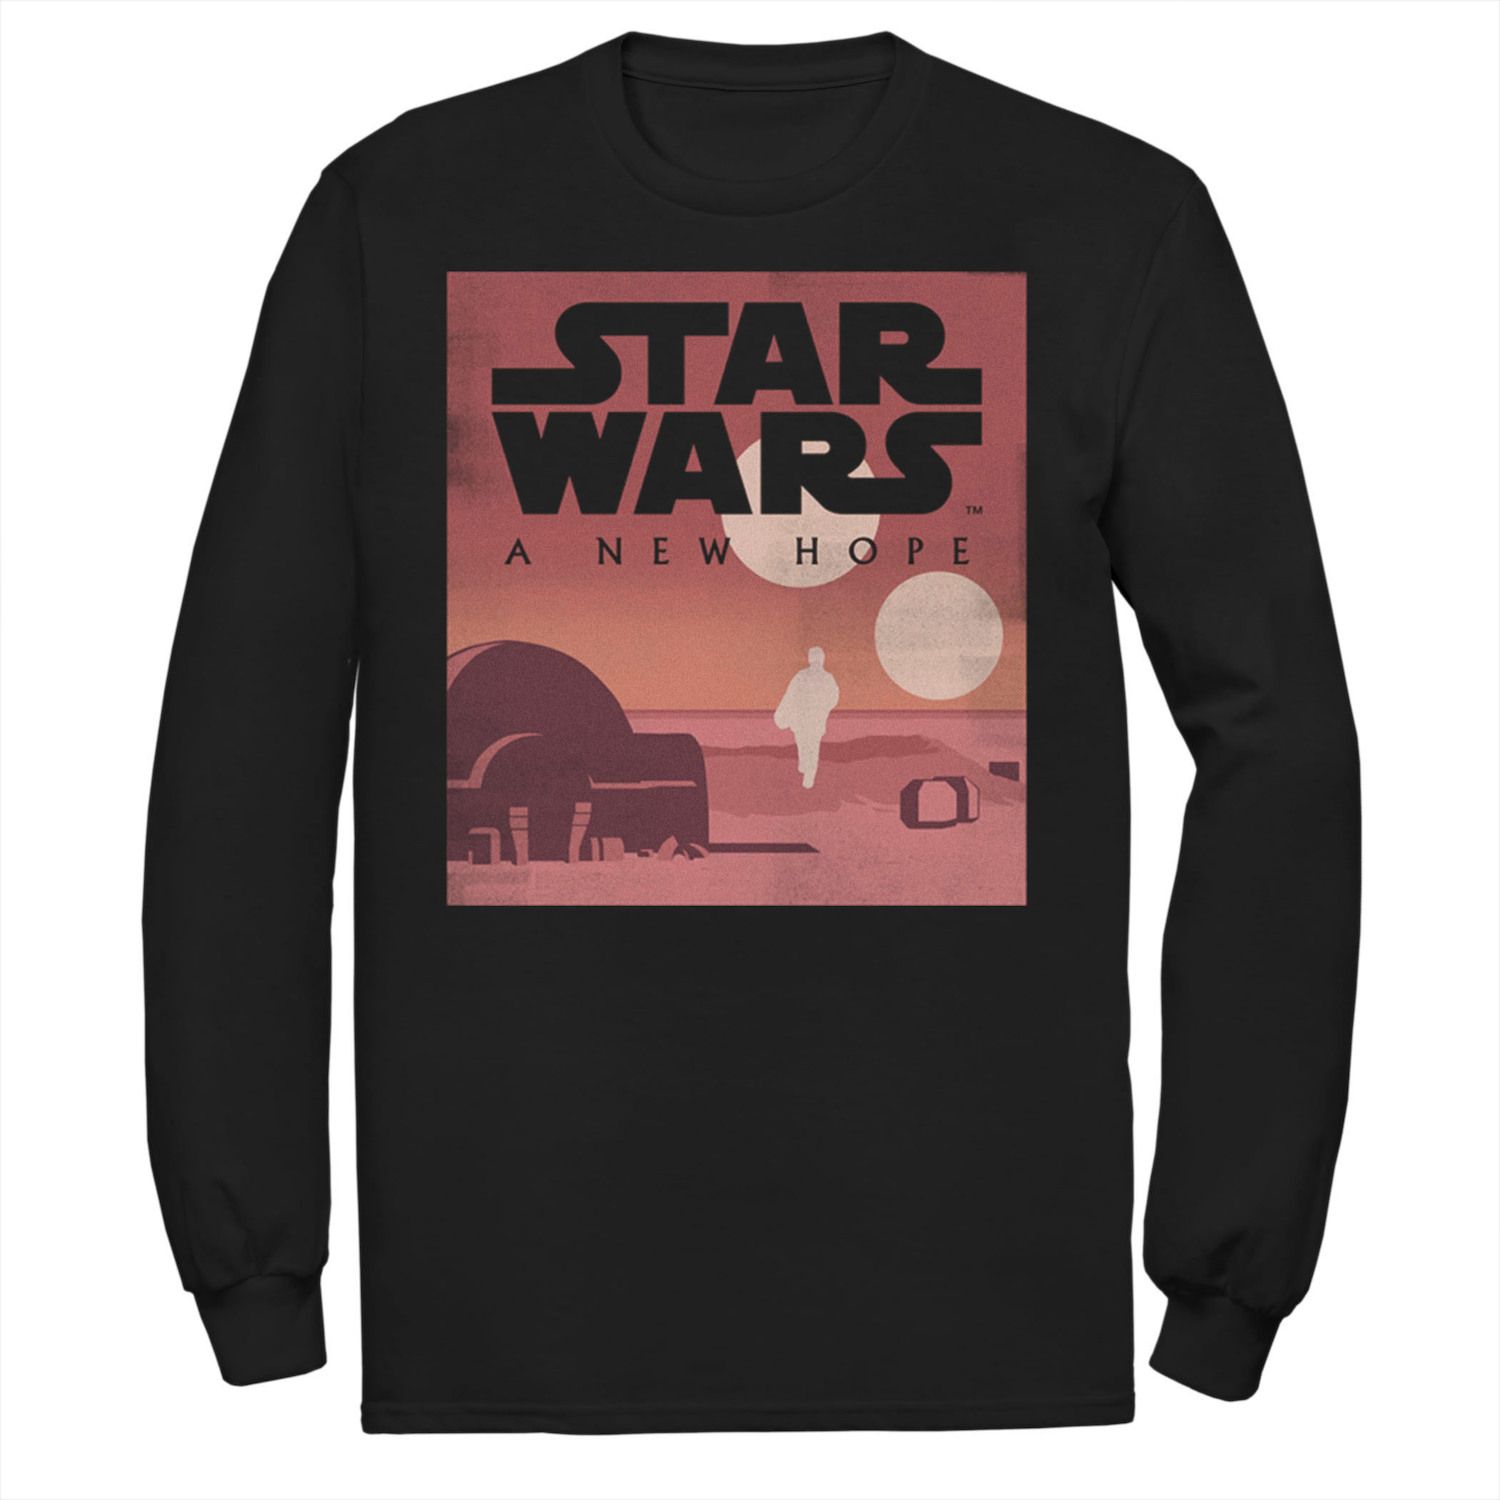 

Мужская минималистичная футболка Star Wars New Hope